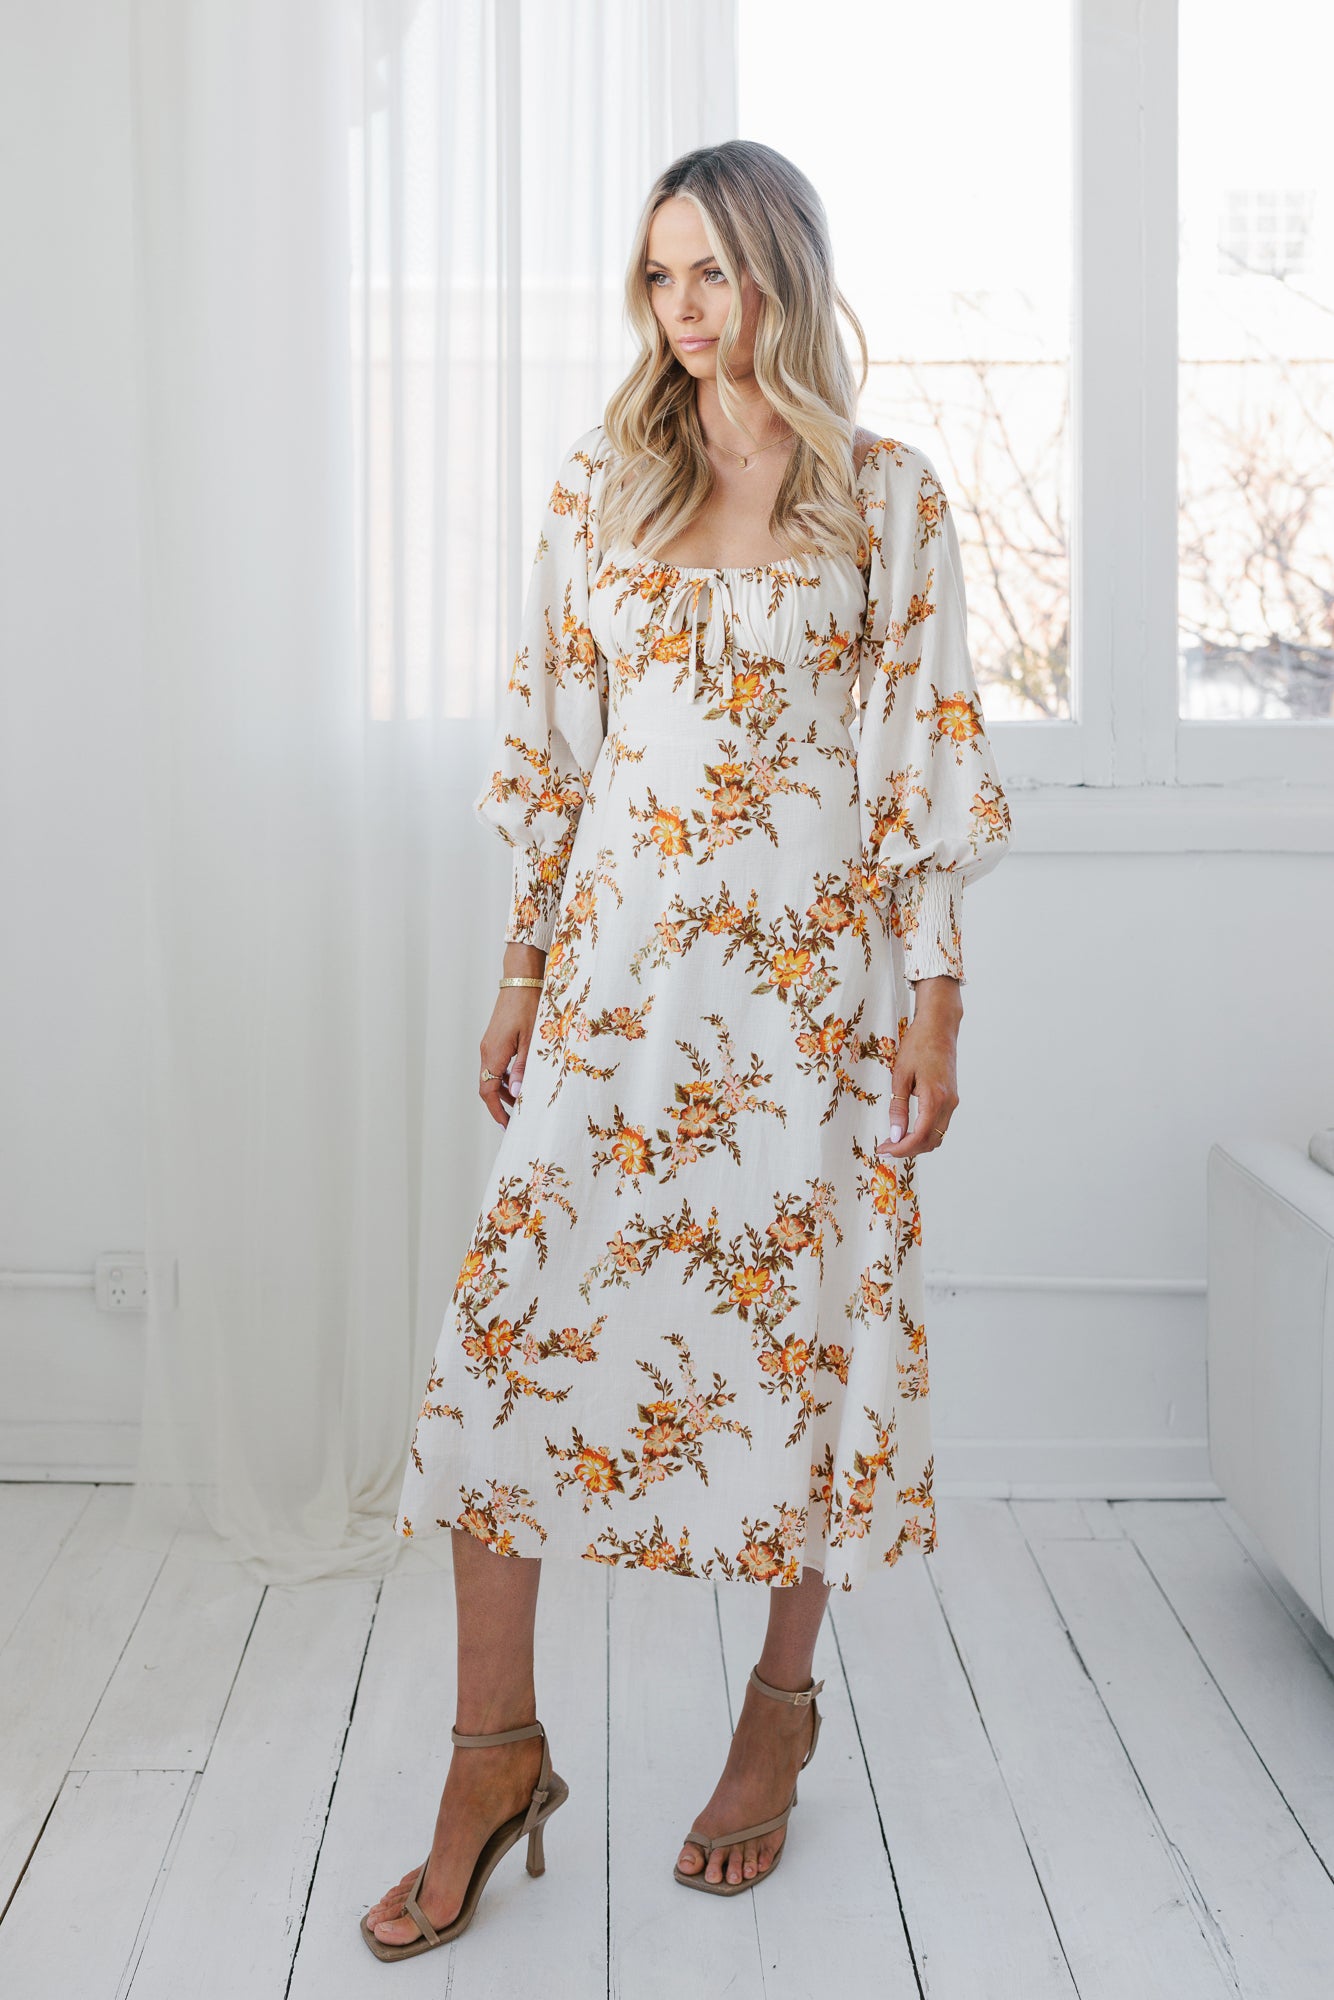 Ruscello Dress - Cream/Peach Floral